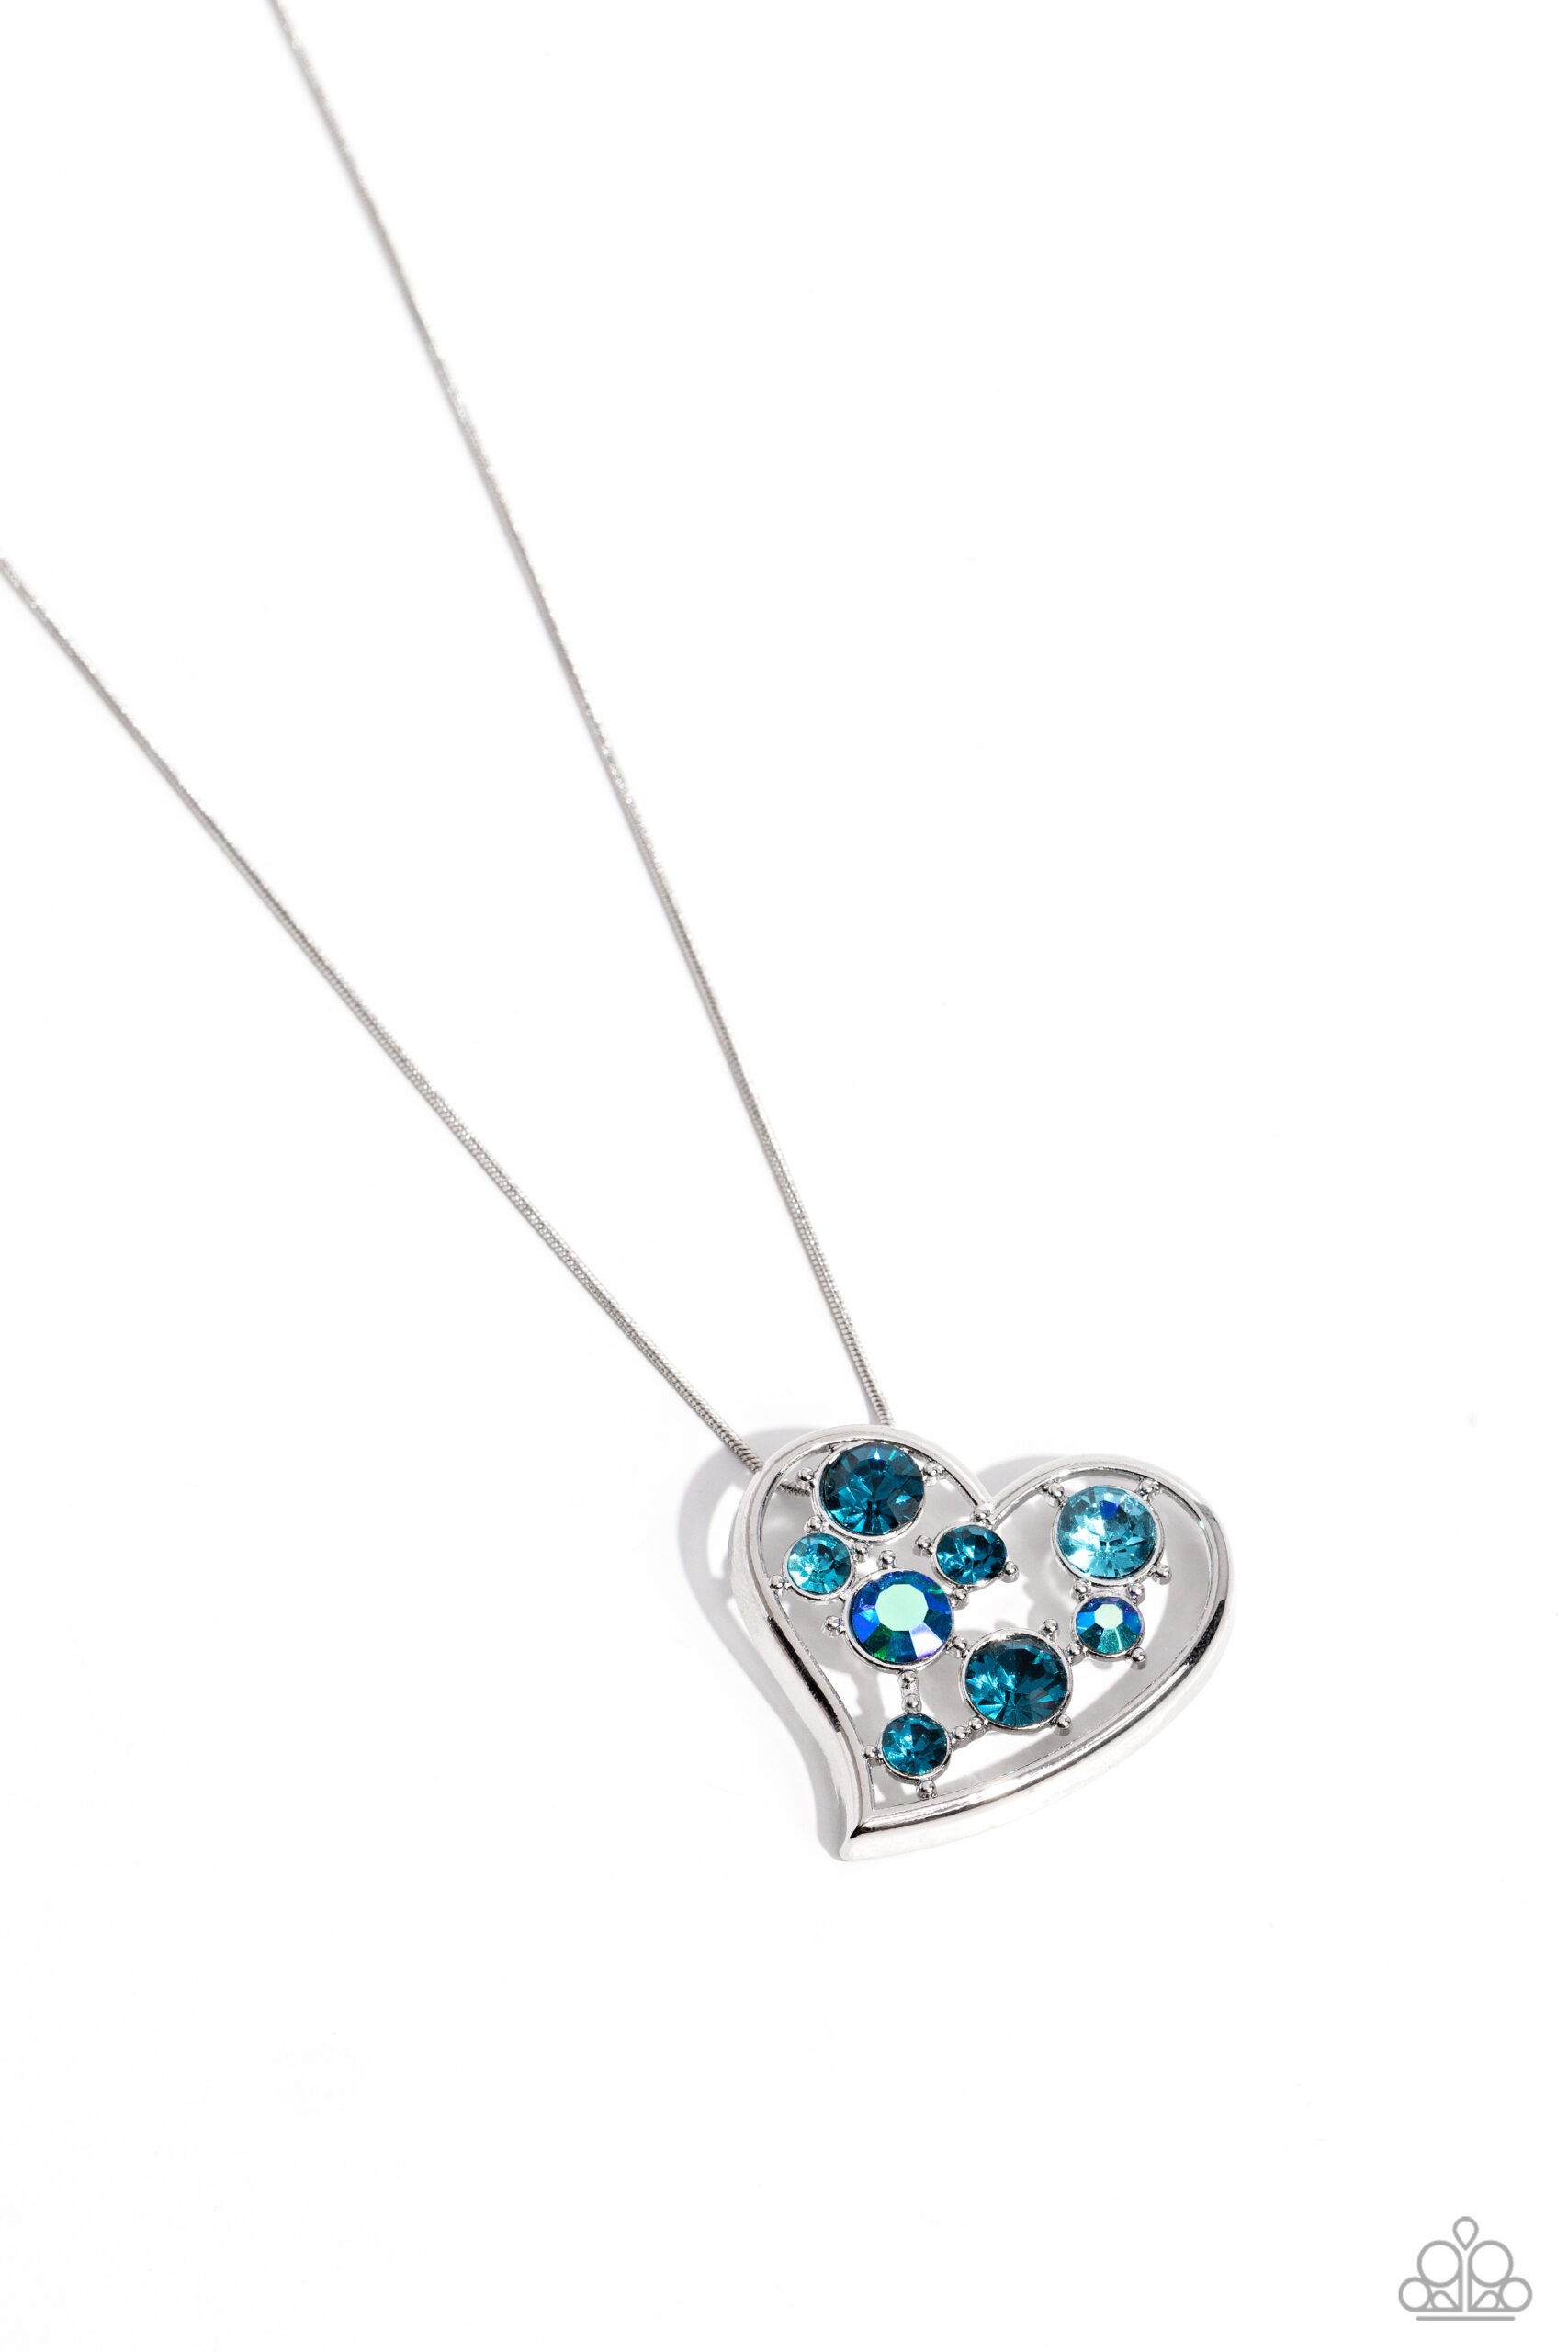 Necklace - Romantic Recognition - Blue